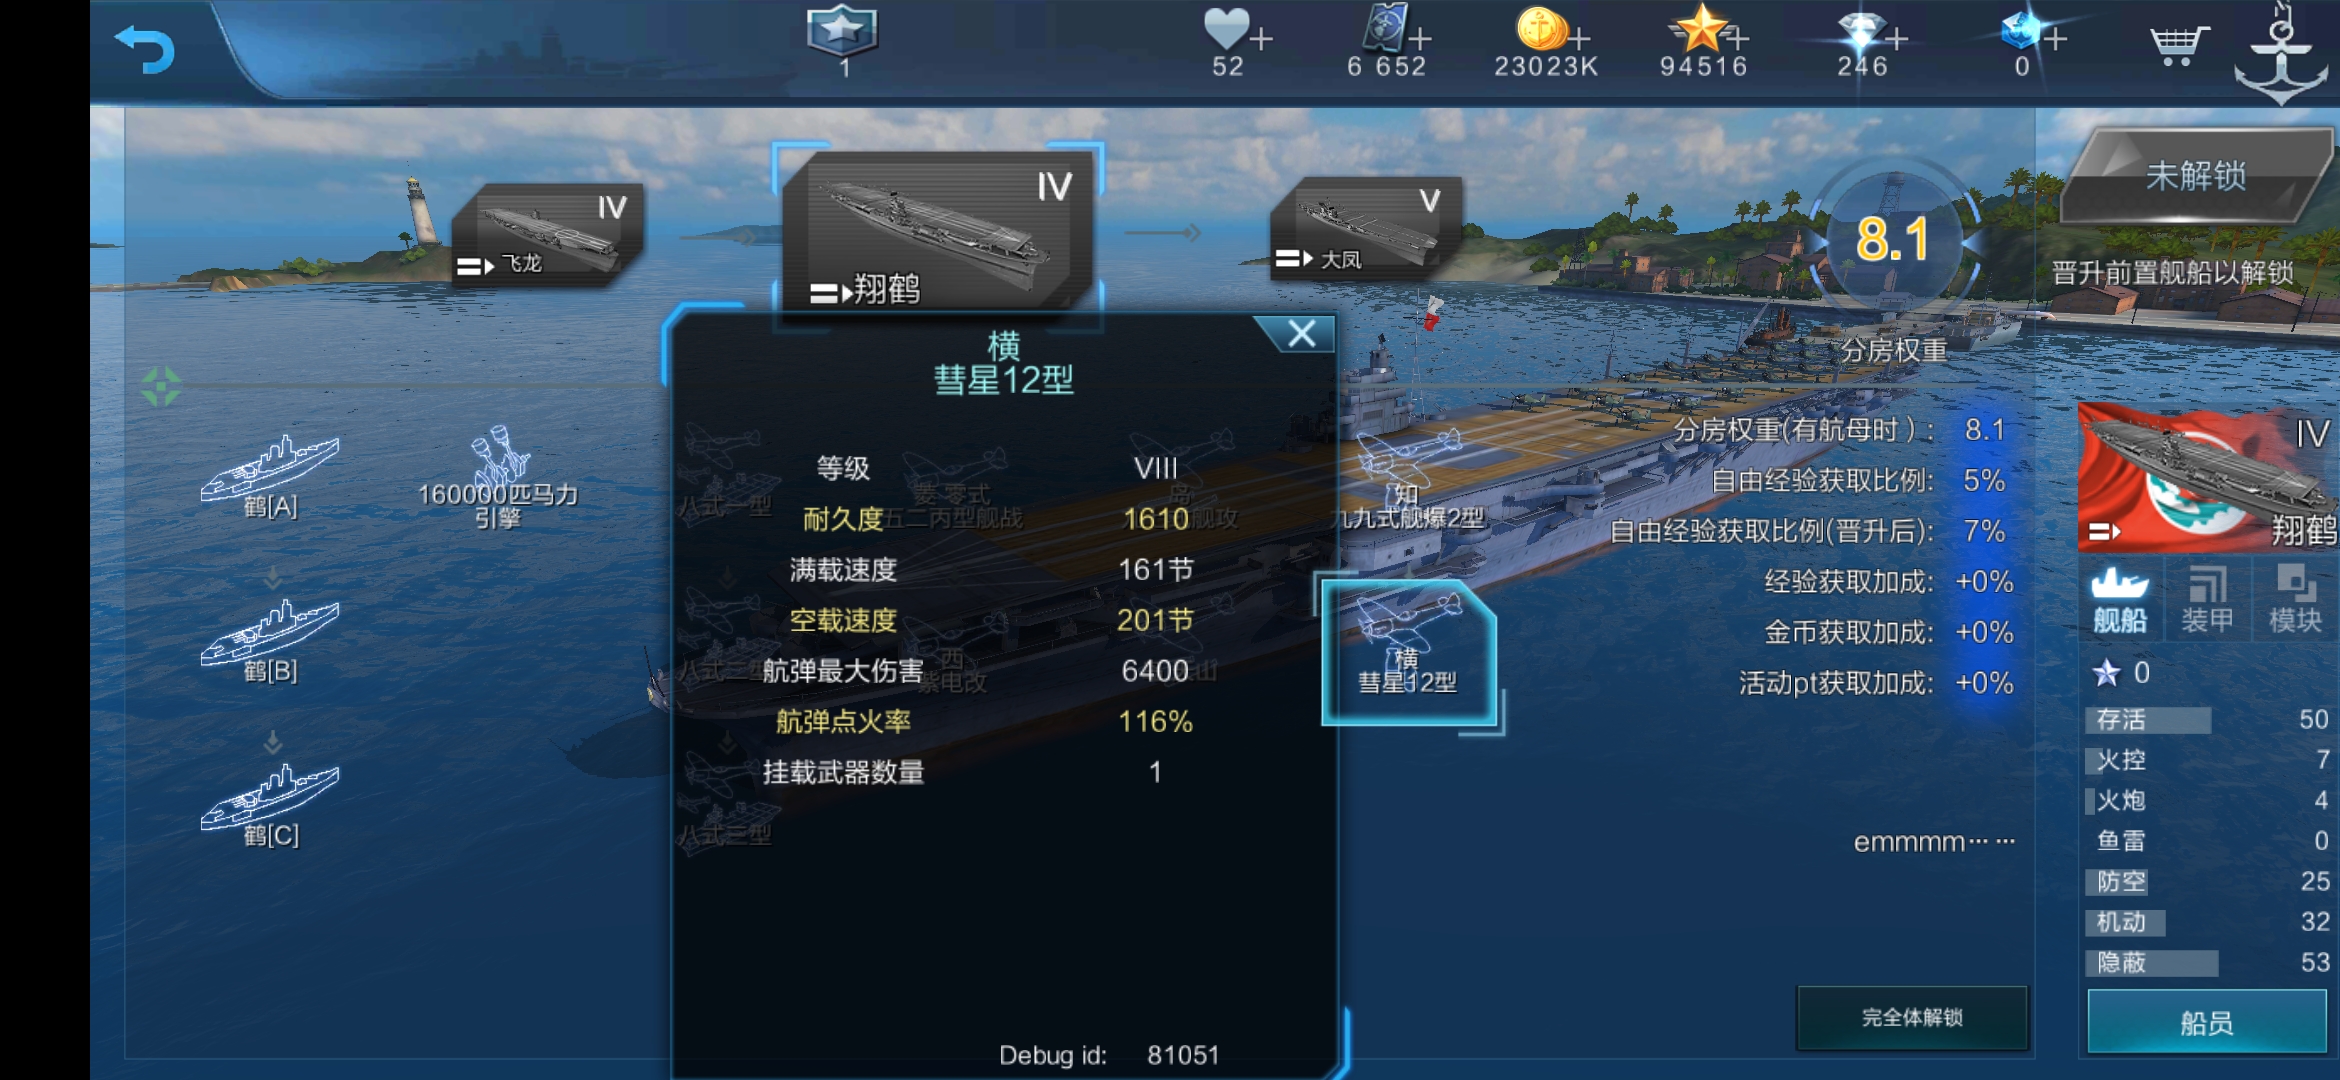 云船系列第21期-----最后的日本海航（之一）------伊势号航空战列舰|战舰联盟 - 第5张